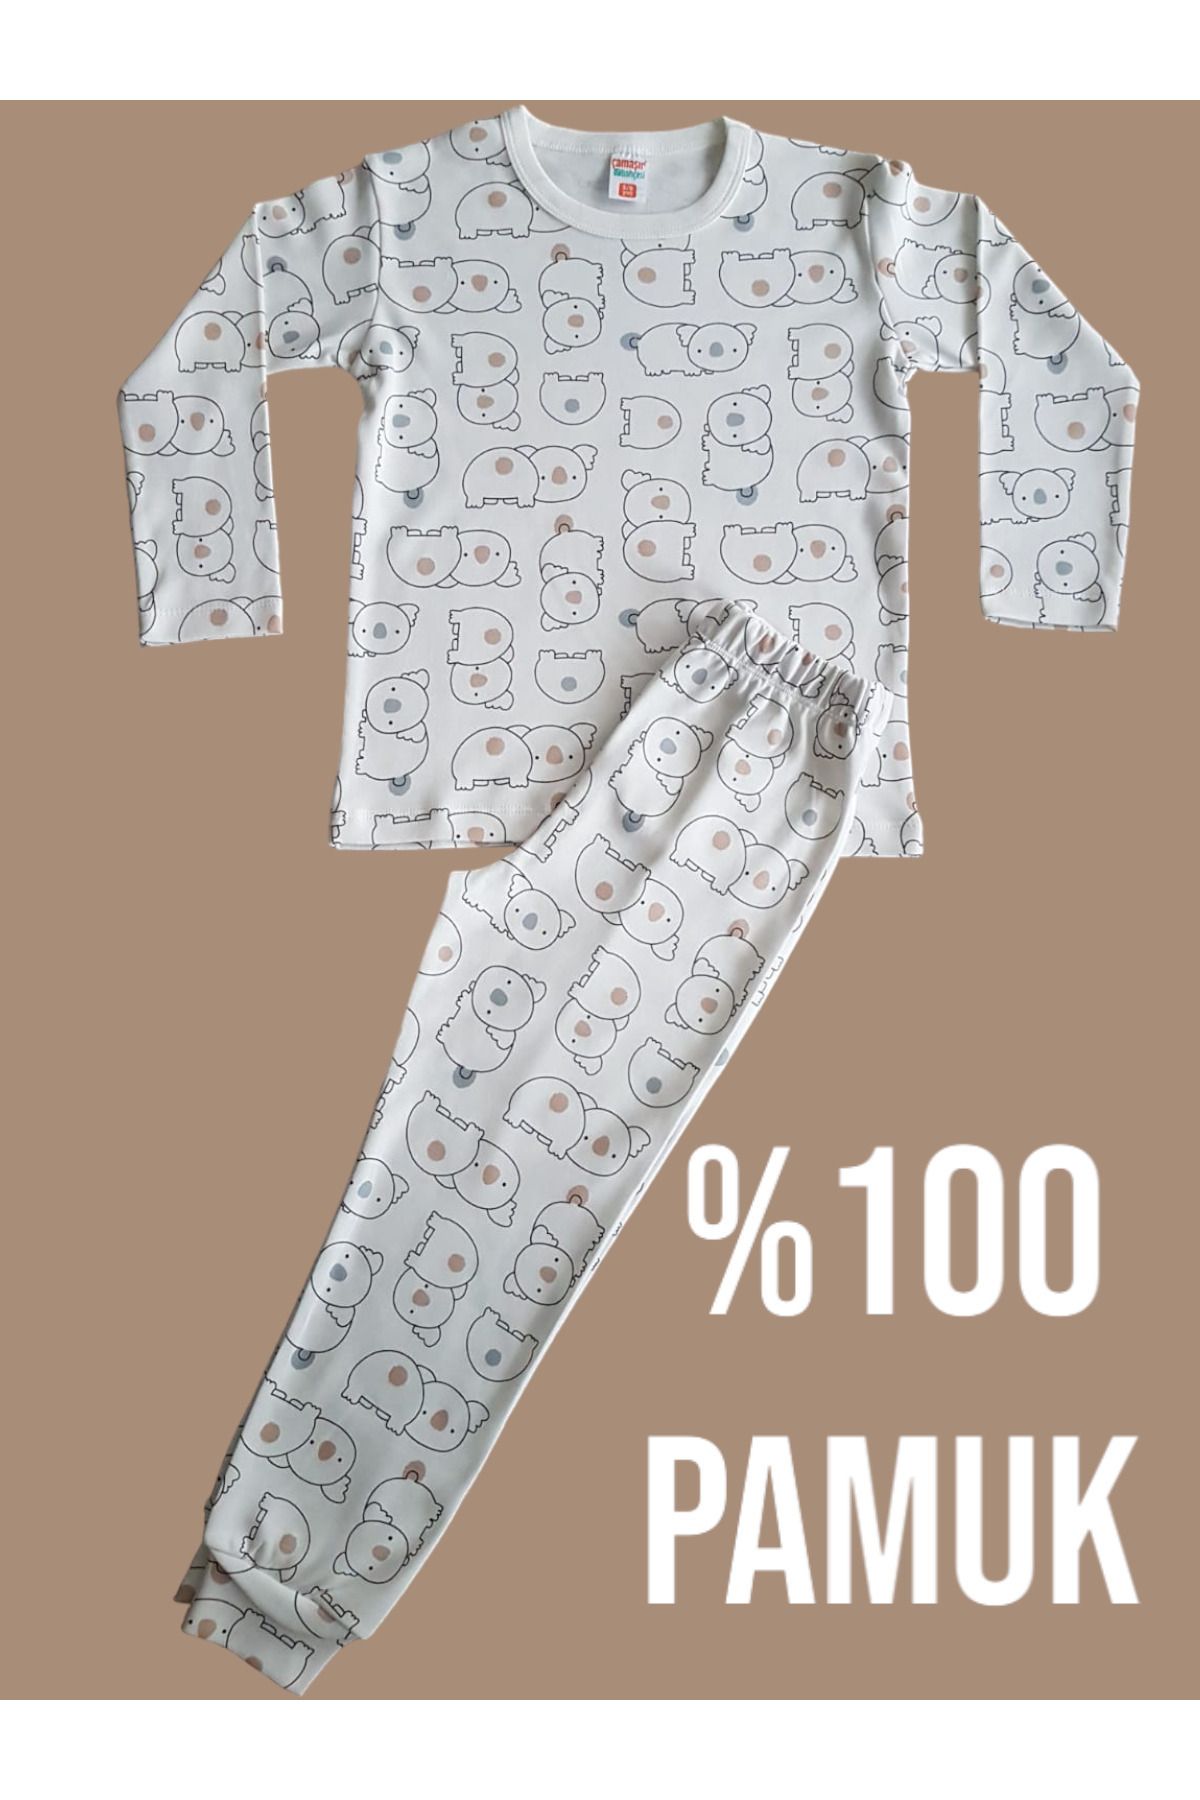 Çamaşır Bahçesi Uzun Kollu Desenli Çocuk Pijama Takım #baskılıçocukpijamatakım #çamaşırbahçesi #koaladesenli